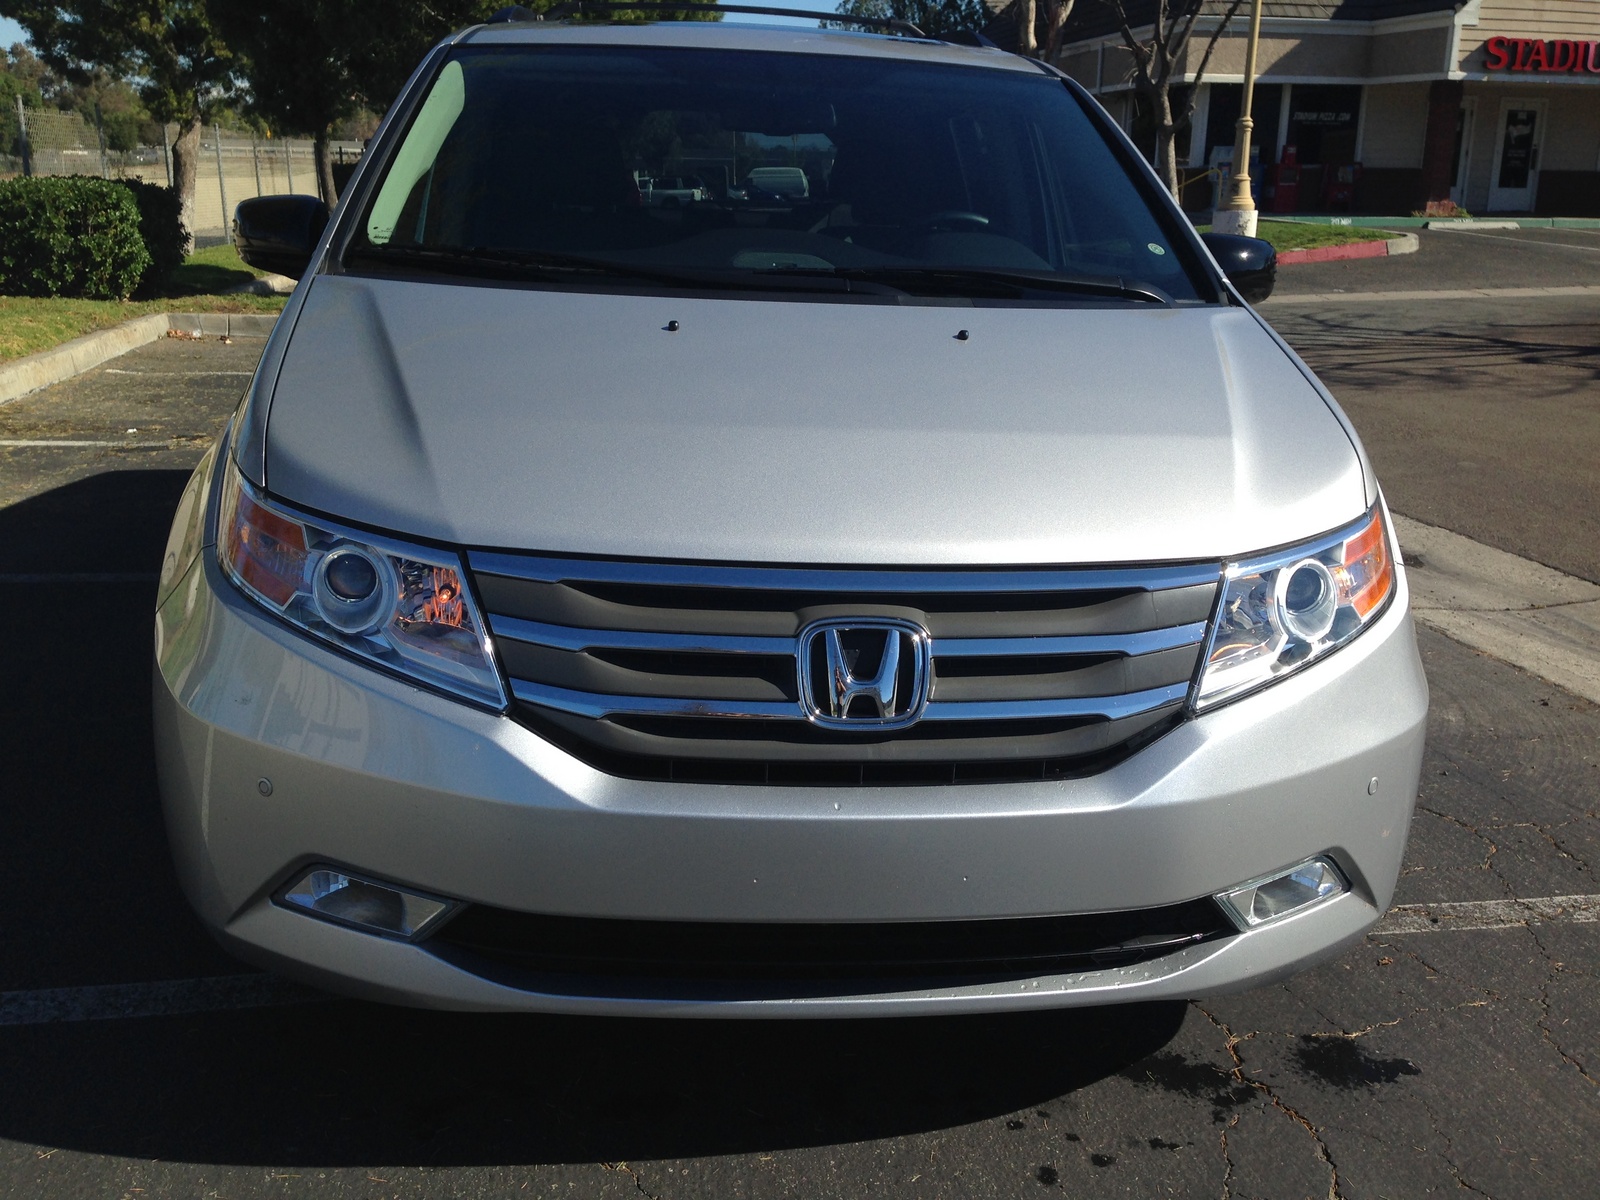 2013 Honda Odyssey - Pictures - CarGurus